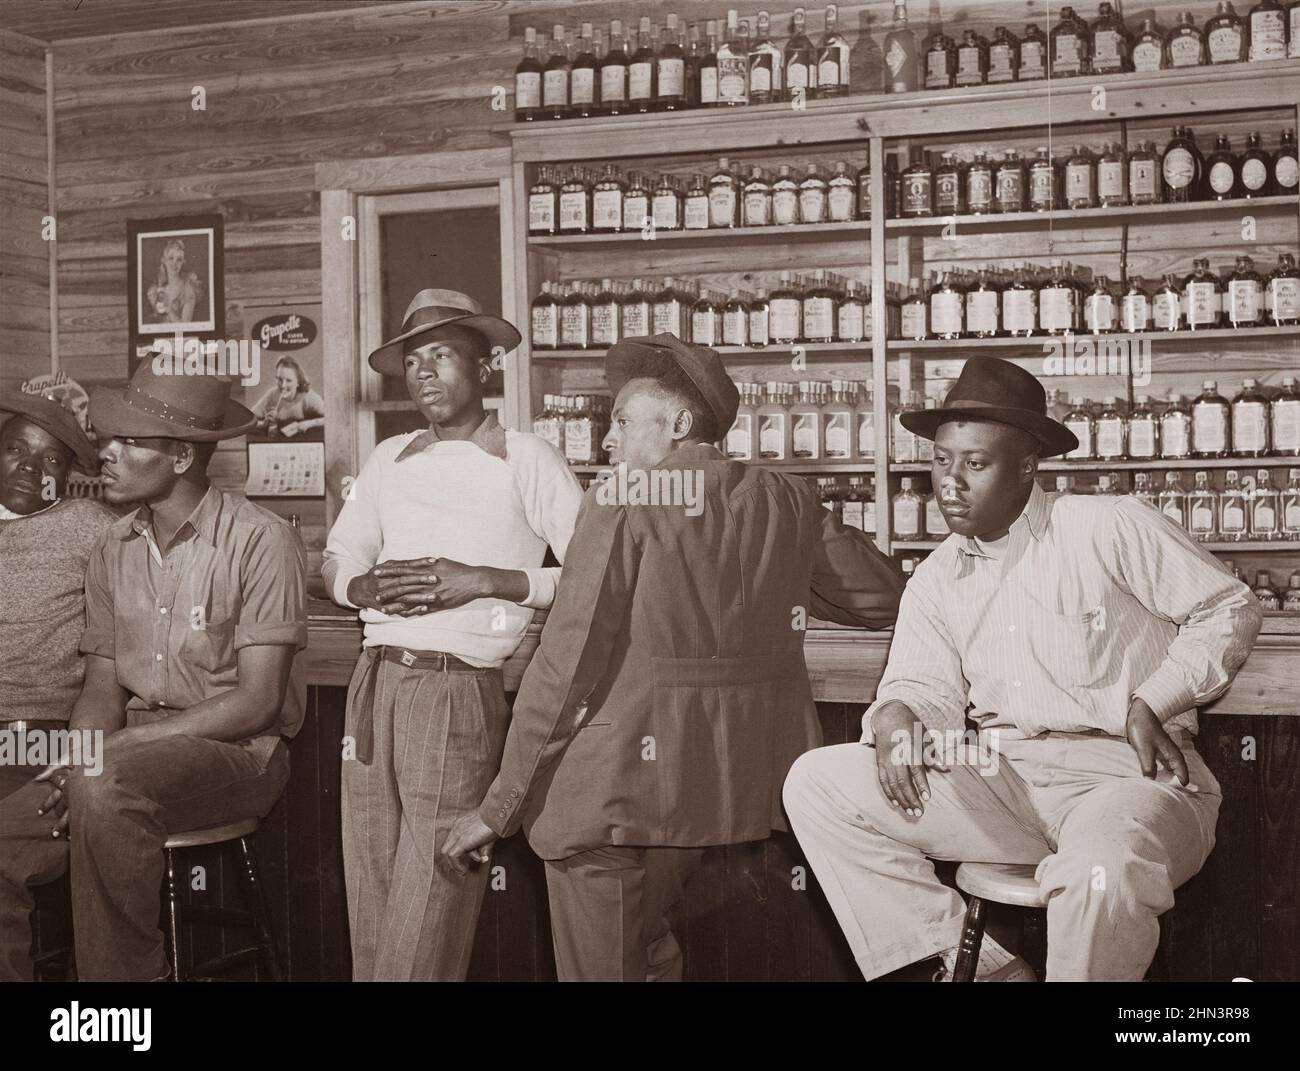 Photo d'époque de l'Amérique du Sud en 1940s. Juke joint et bar dans la région de Belle Glade, section de légumes du centre sud de la Floride. Février 1941 Banque D'Images